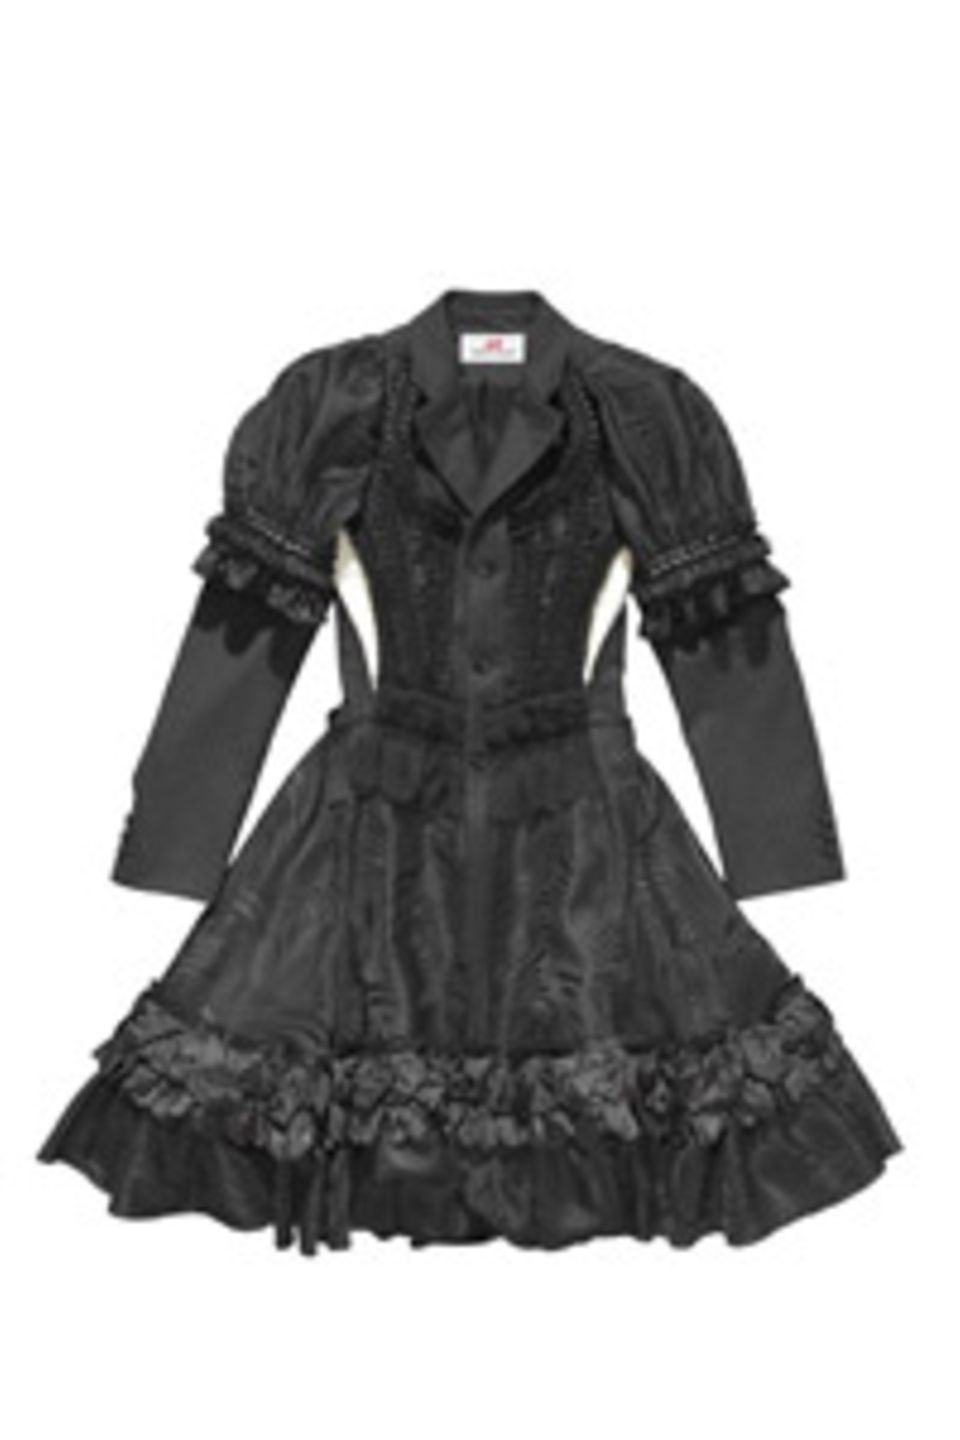 Aufwendiges Kleid von Comme des Garçons für H&M, um 300 Euro, ab 13. November in ausgewählten H&M-Filialen.